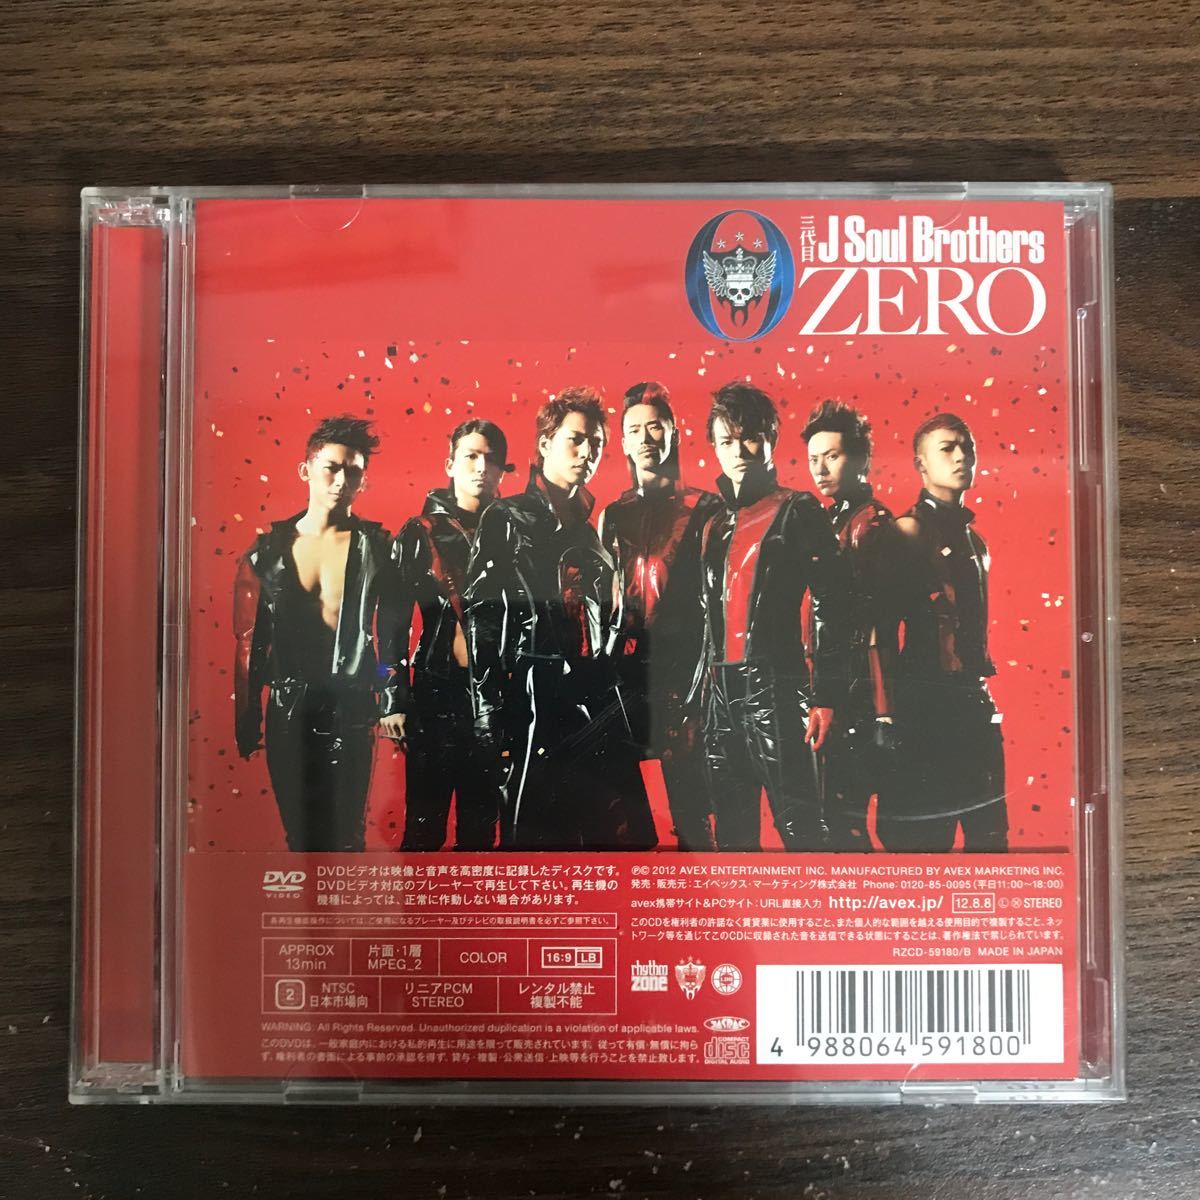 (484)帯付 中古CD150円 三代目 J Soul Brothers 0~ZERO~(初回生産限定) (SINGLE+DVD) (ジャケットパターンD)_画像1